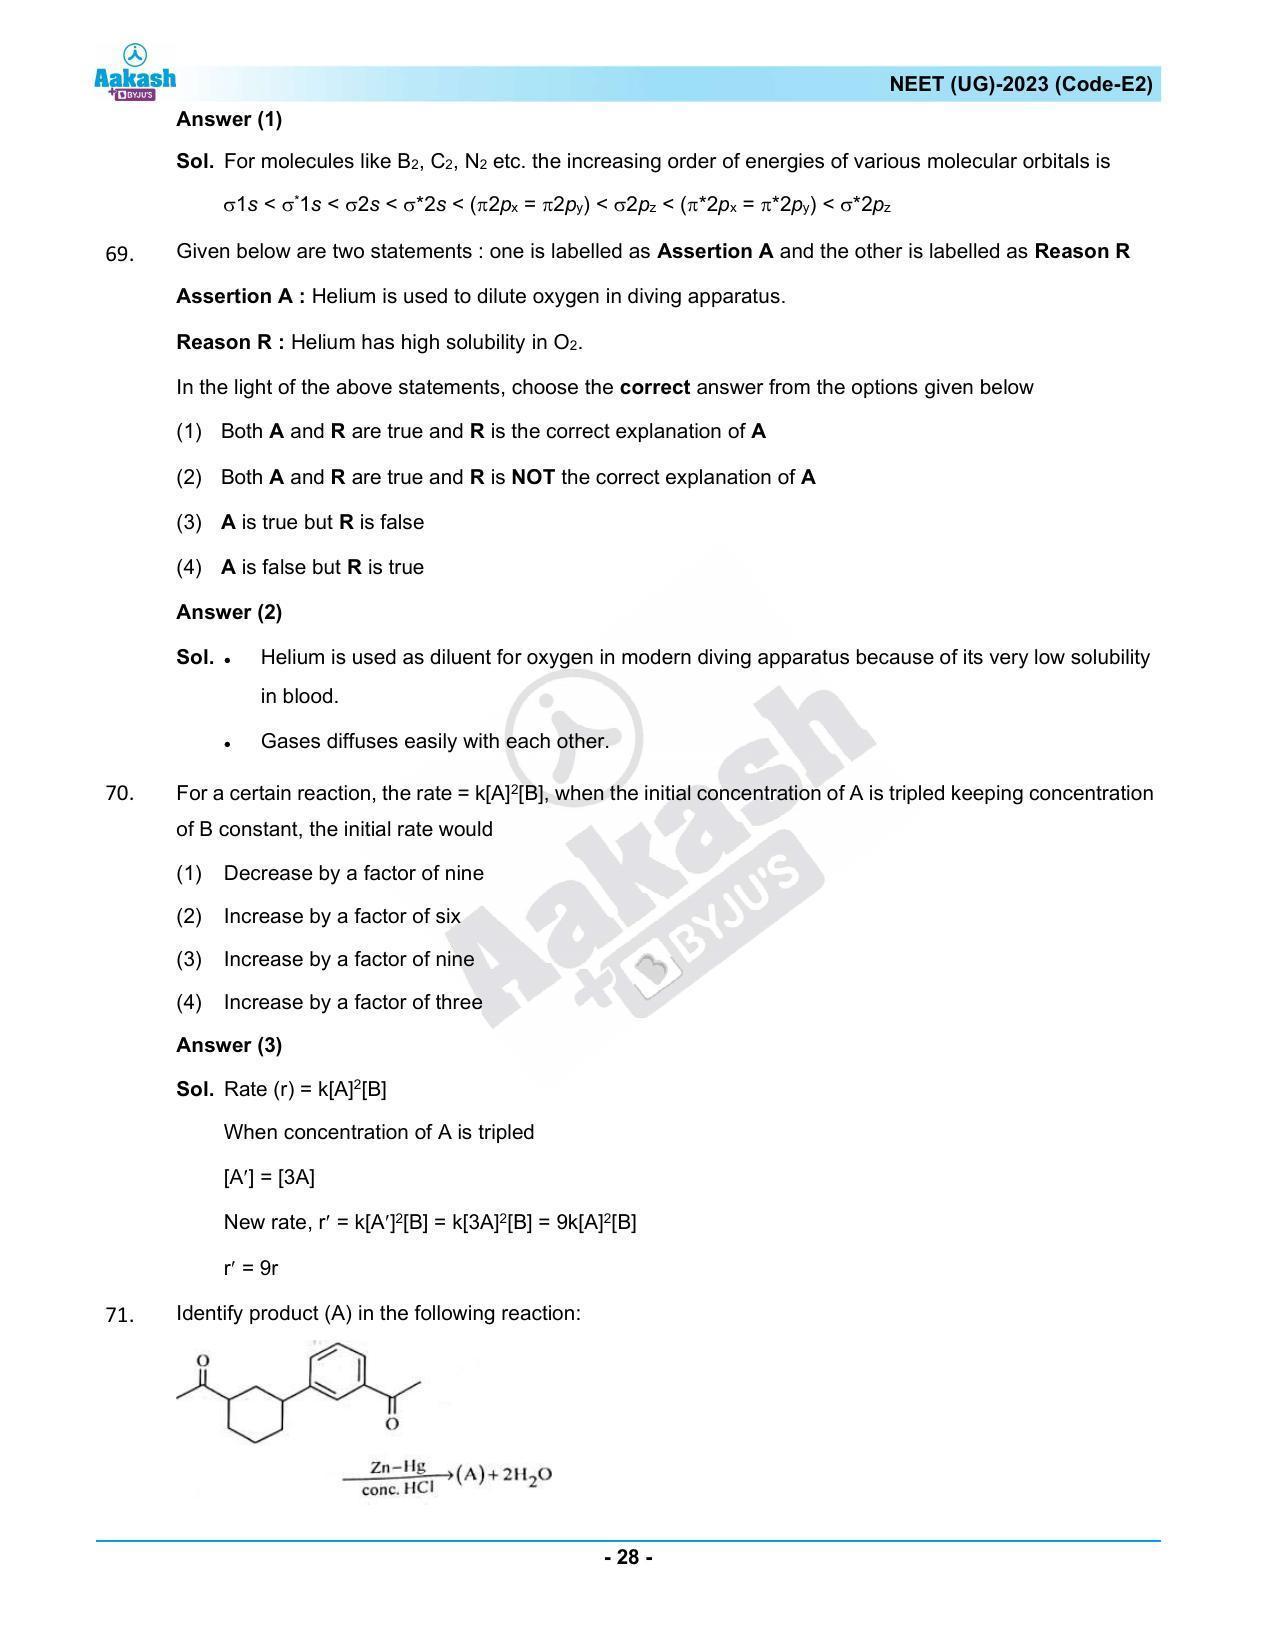 NEET 2023 Question Paper E2 - Page 28